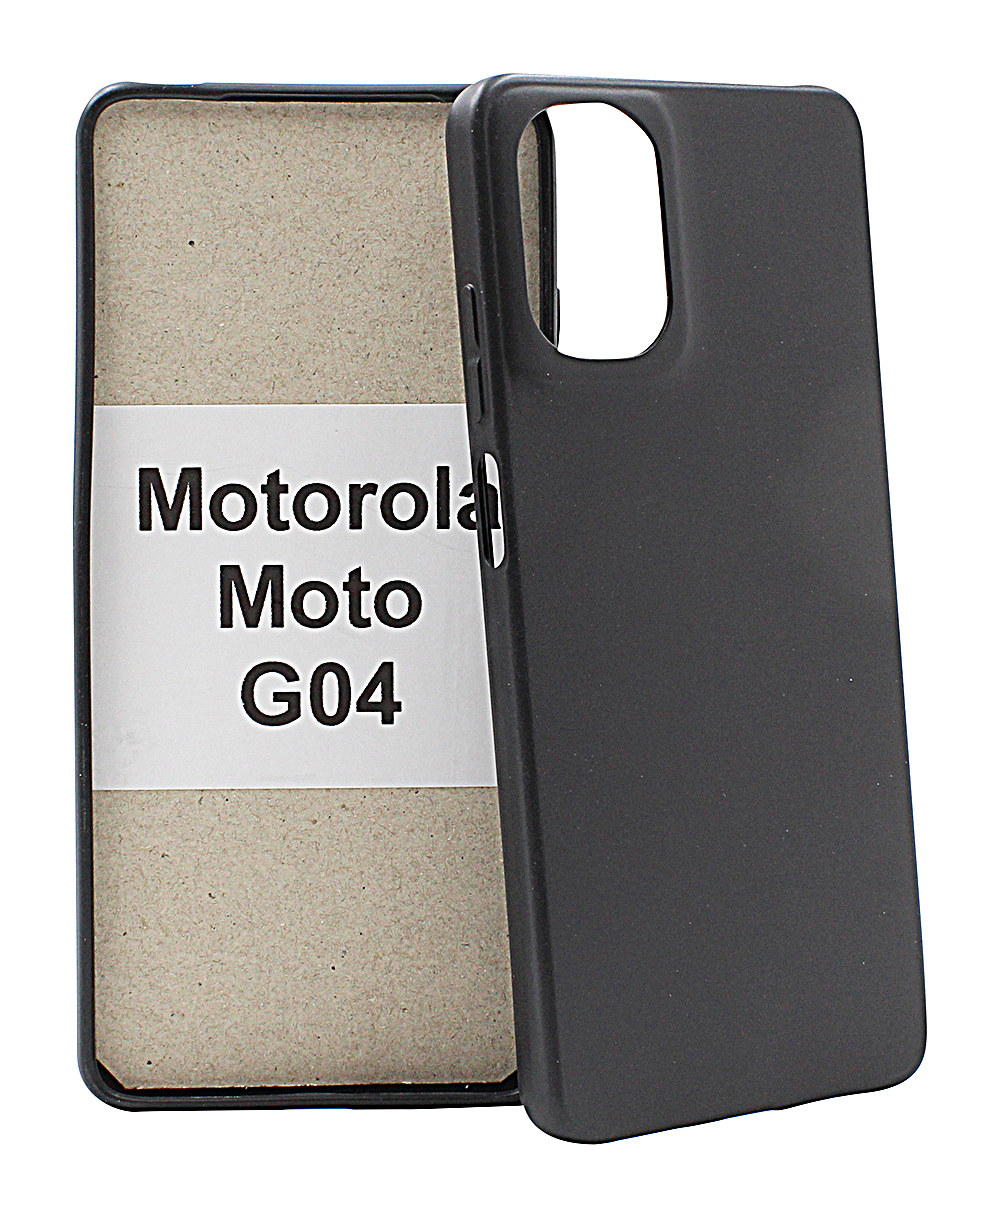 billigamobilskydd.seTPU Skal Motorola Moto G04